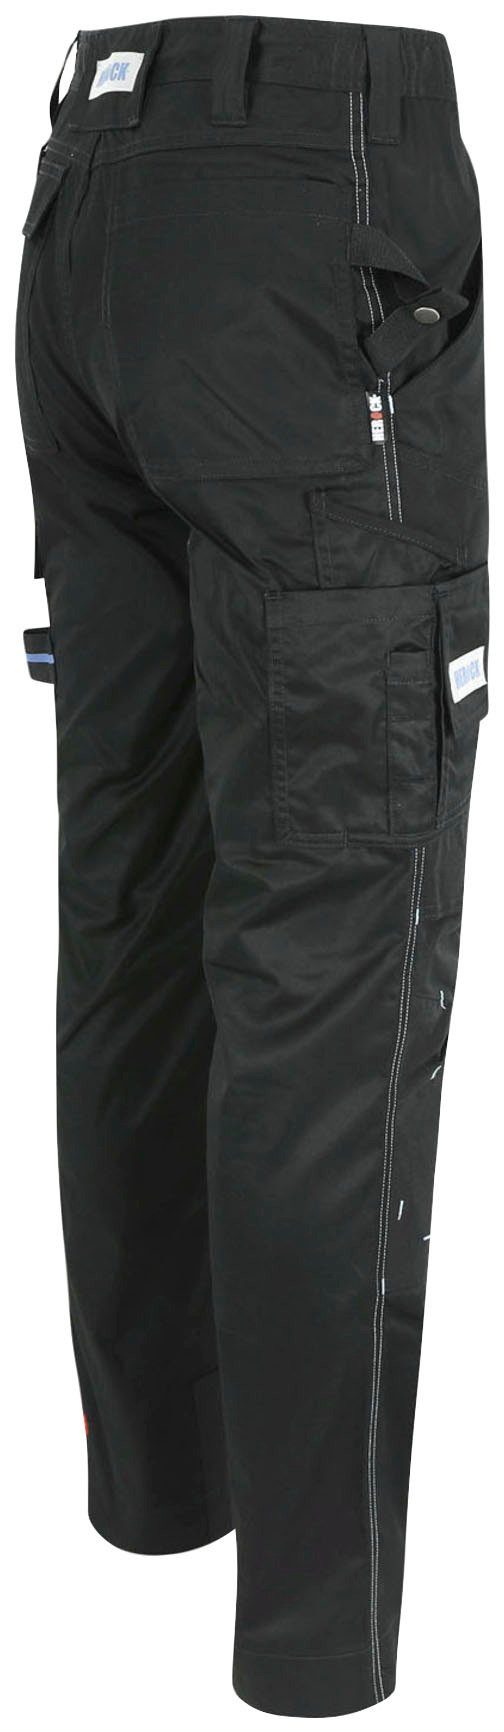 Farben schwarz Capua Stretch, Herock Coolmax® -Techn.; Arbeitshose Viele Hose mit mehrere Taschen, leicht